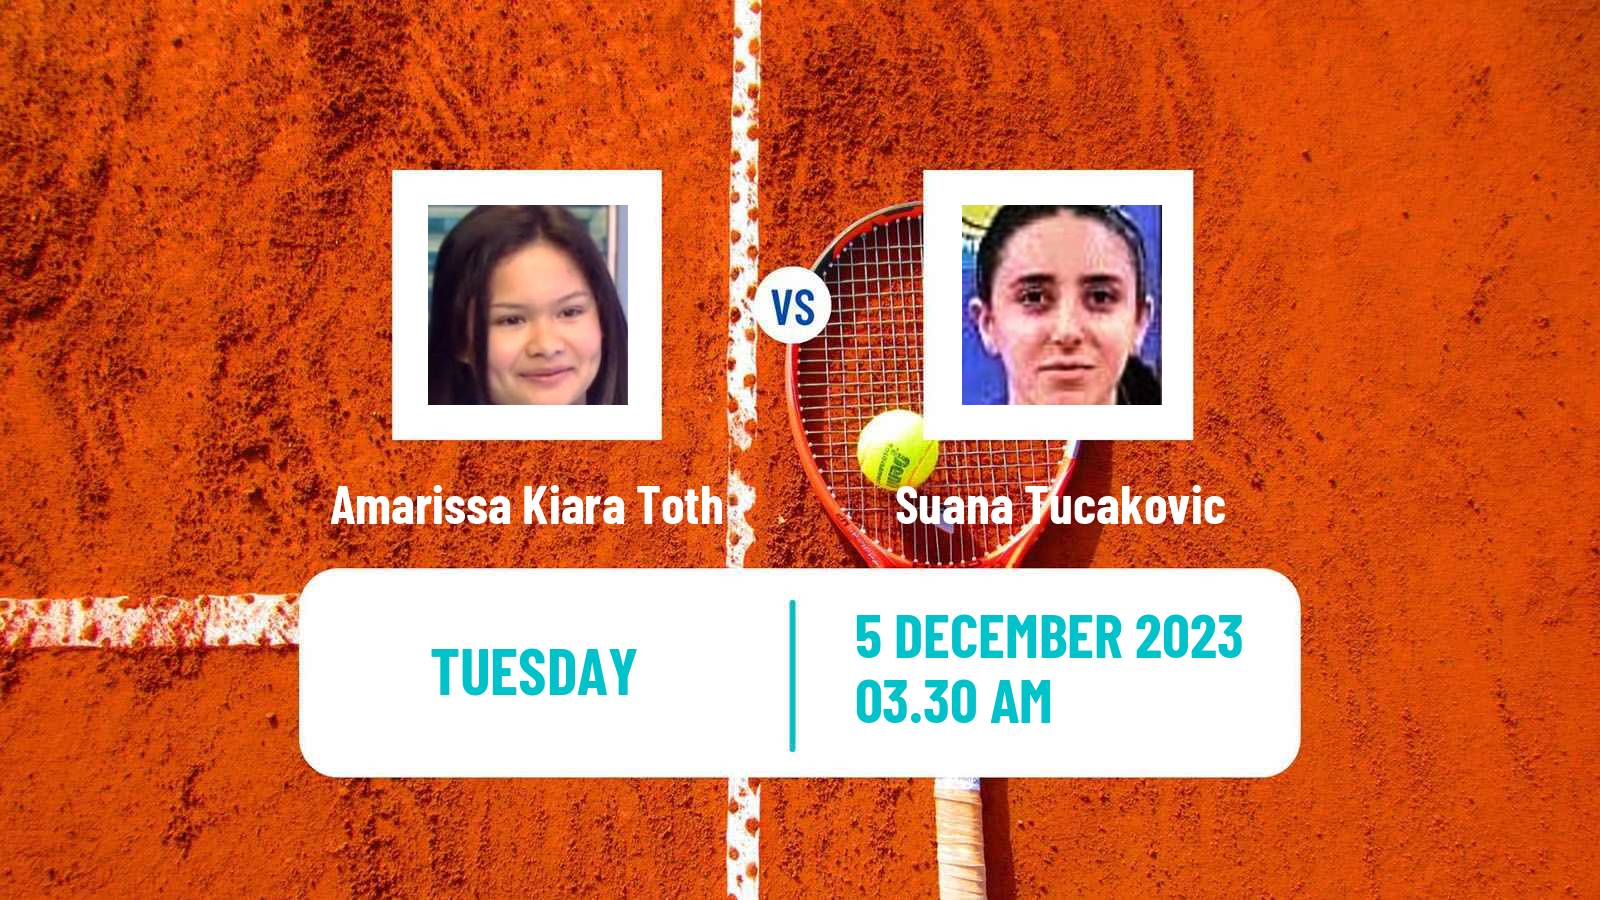 Tennis ITF W15 Antalya 21 Women Amarissa Kiara Toth - Suana Tucakovic